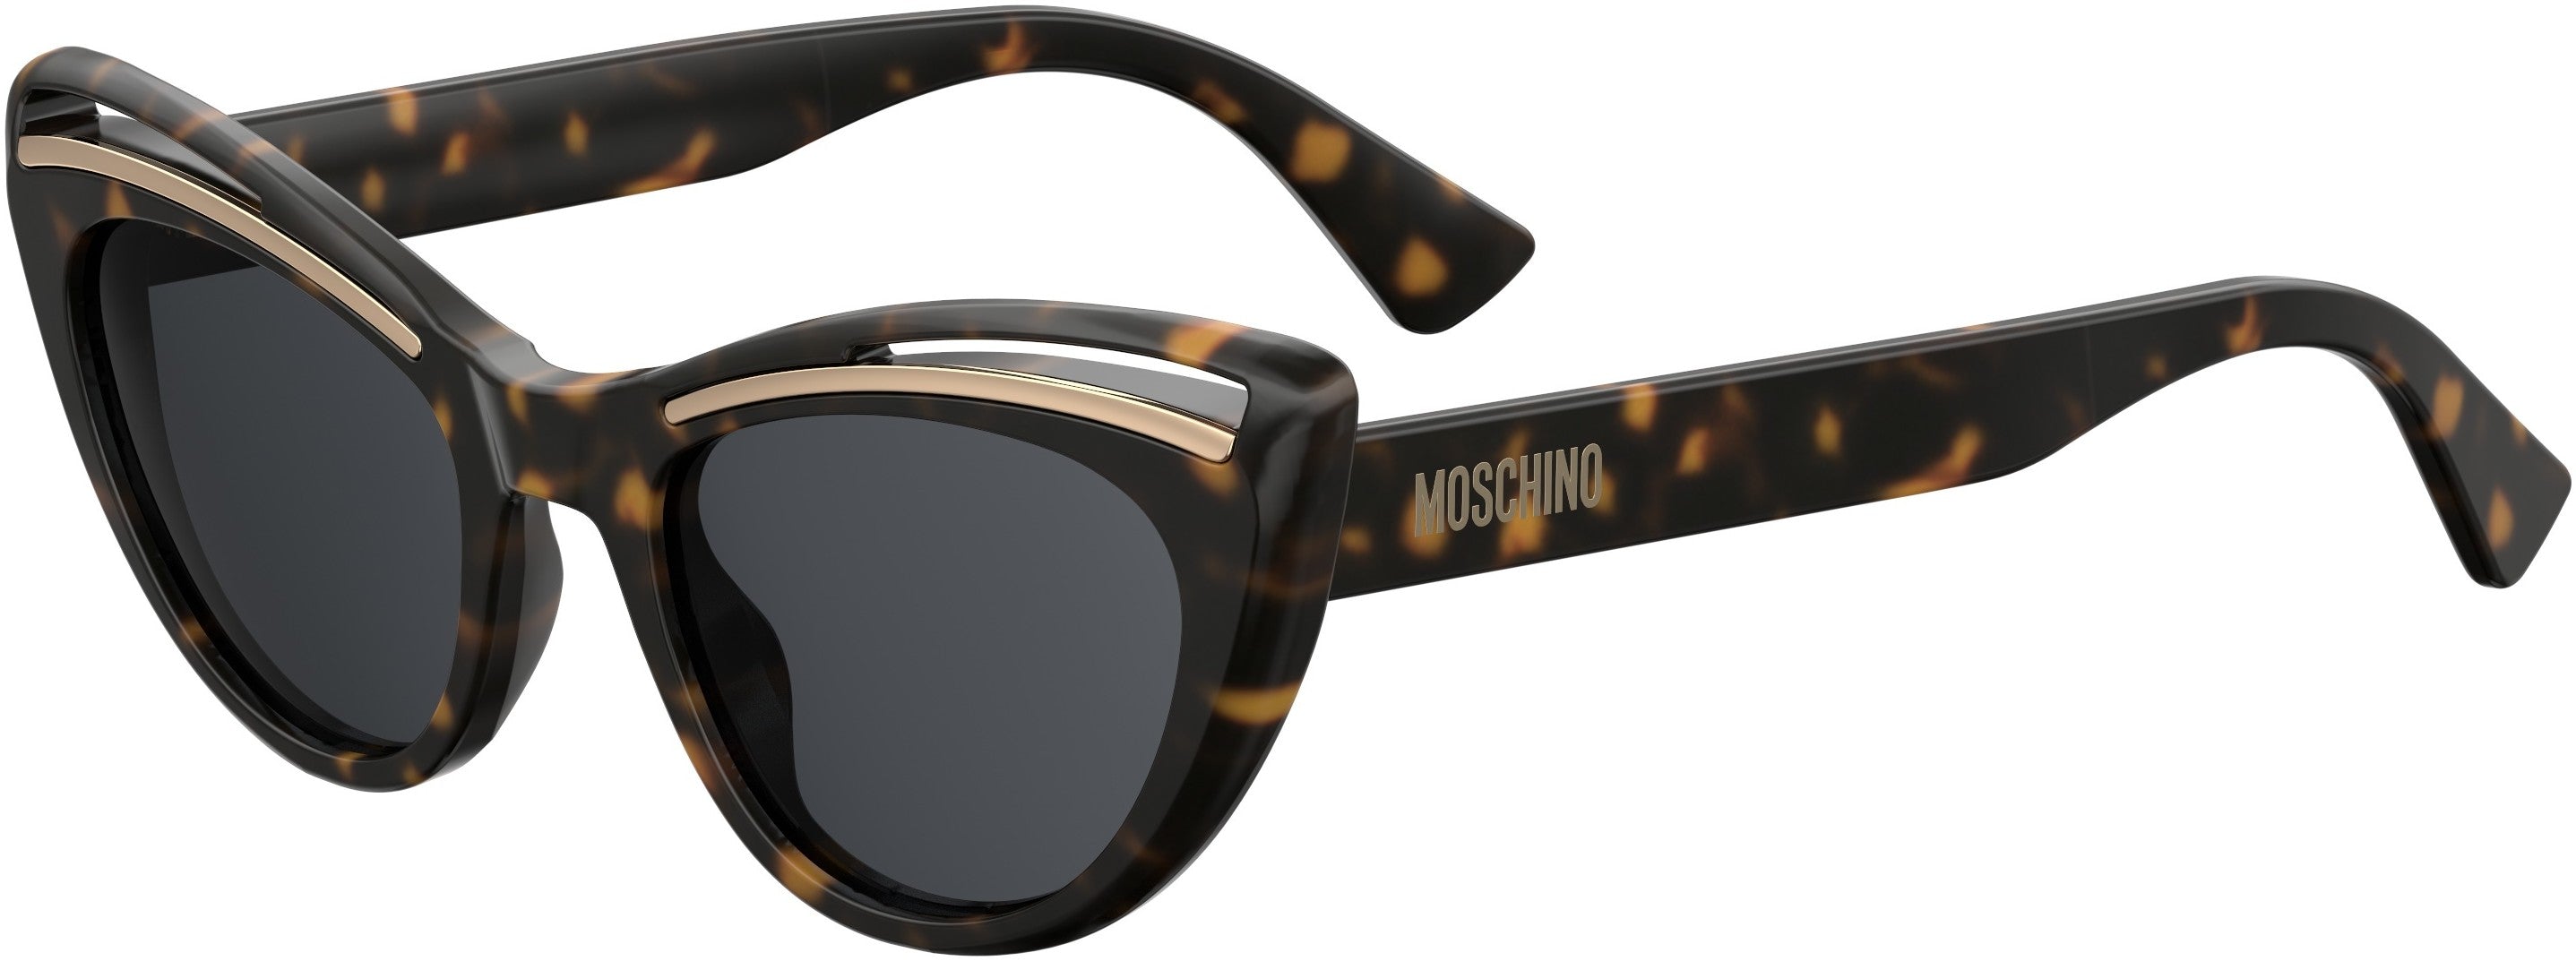  Moschino 036/S Cat Eye/butterfly Sunglasses 0086-0086  Dark Havana (IR Gray)